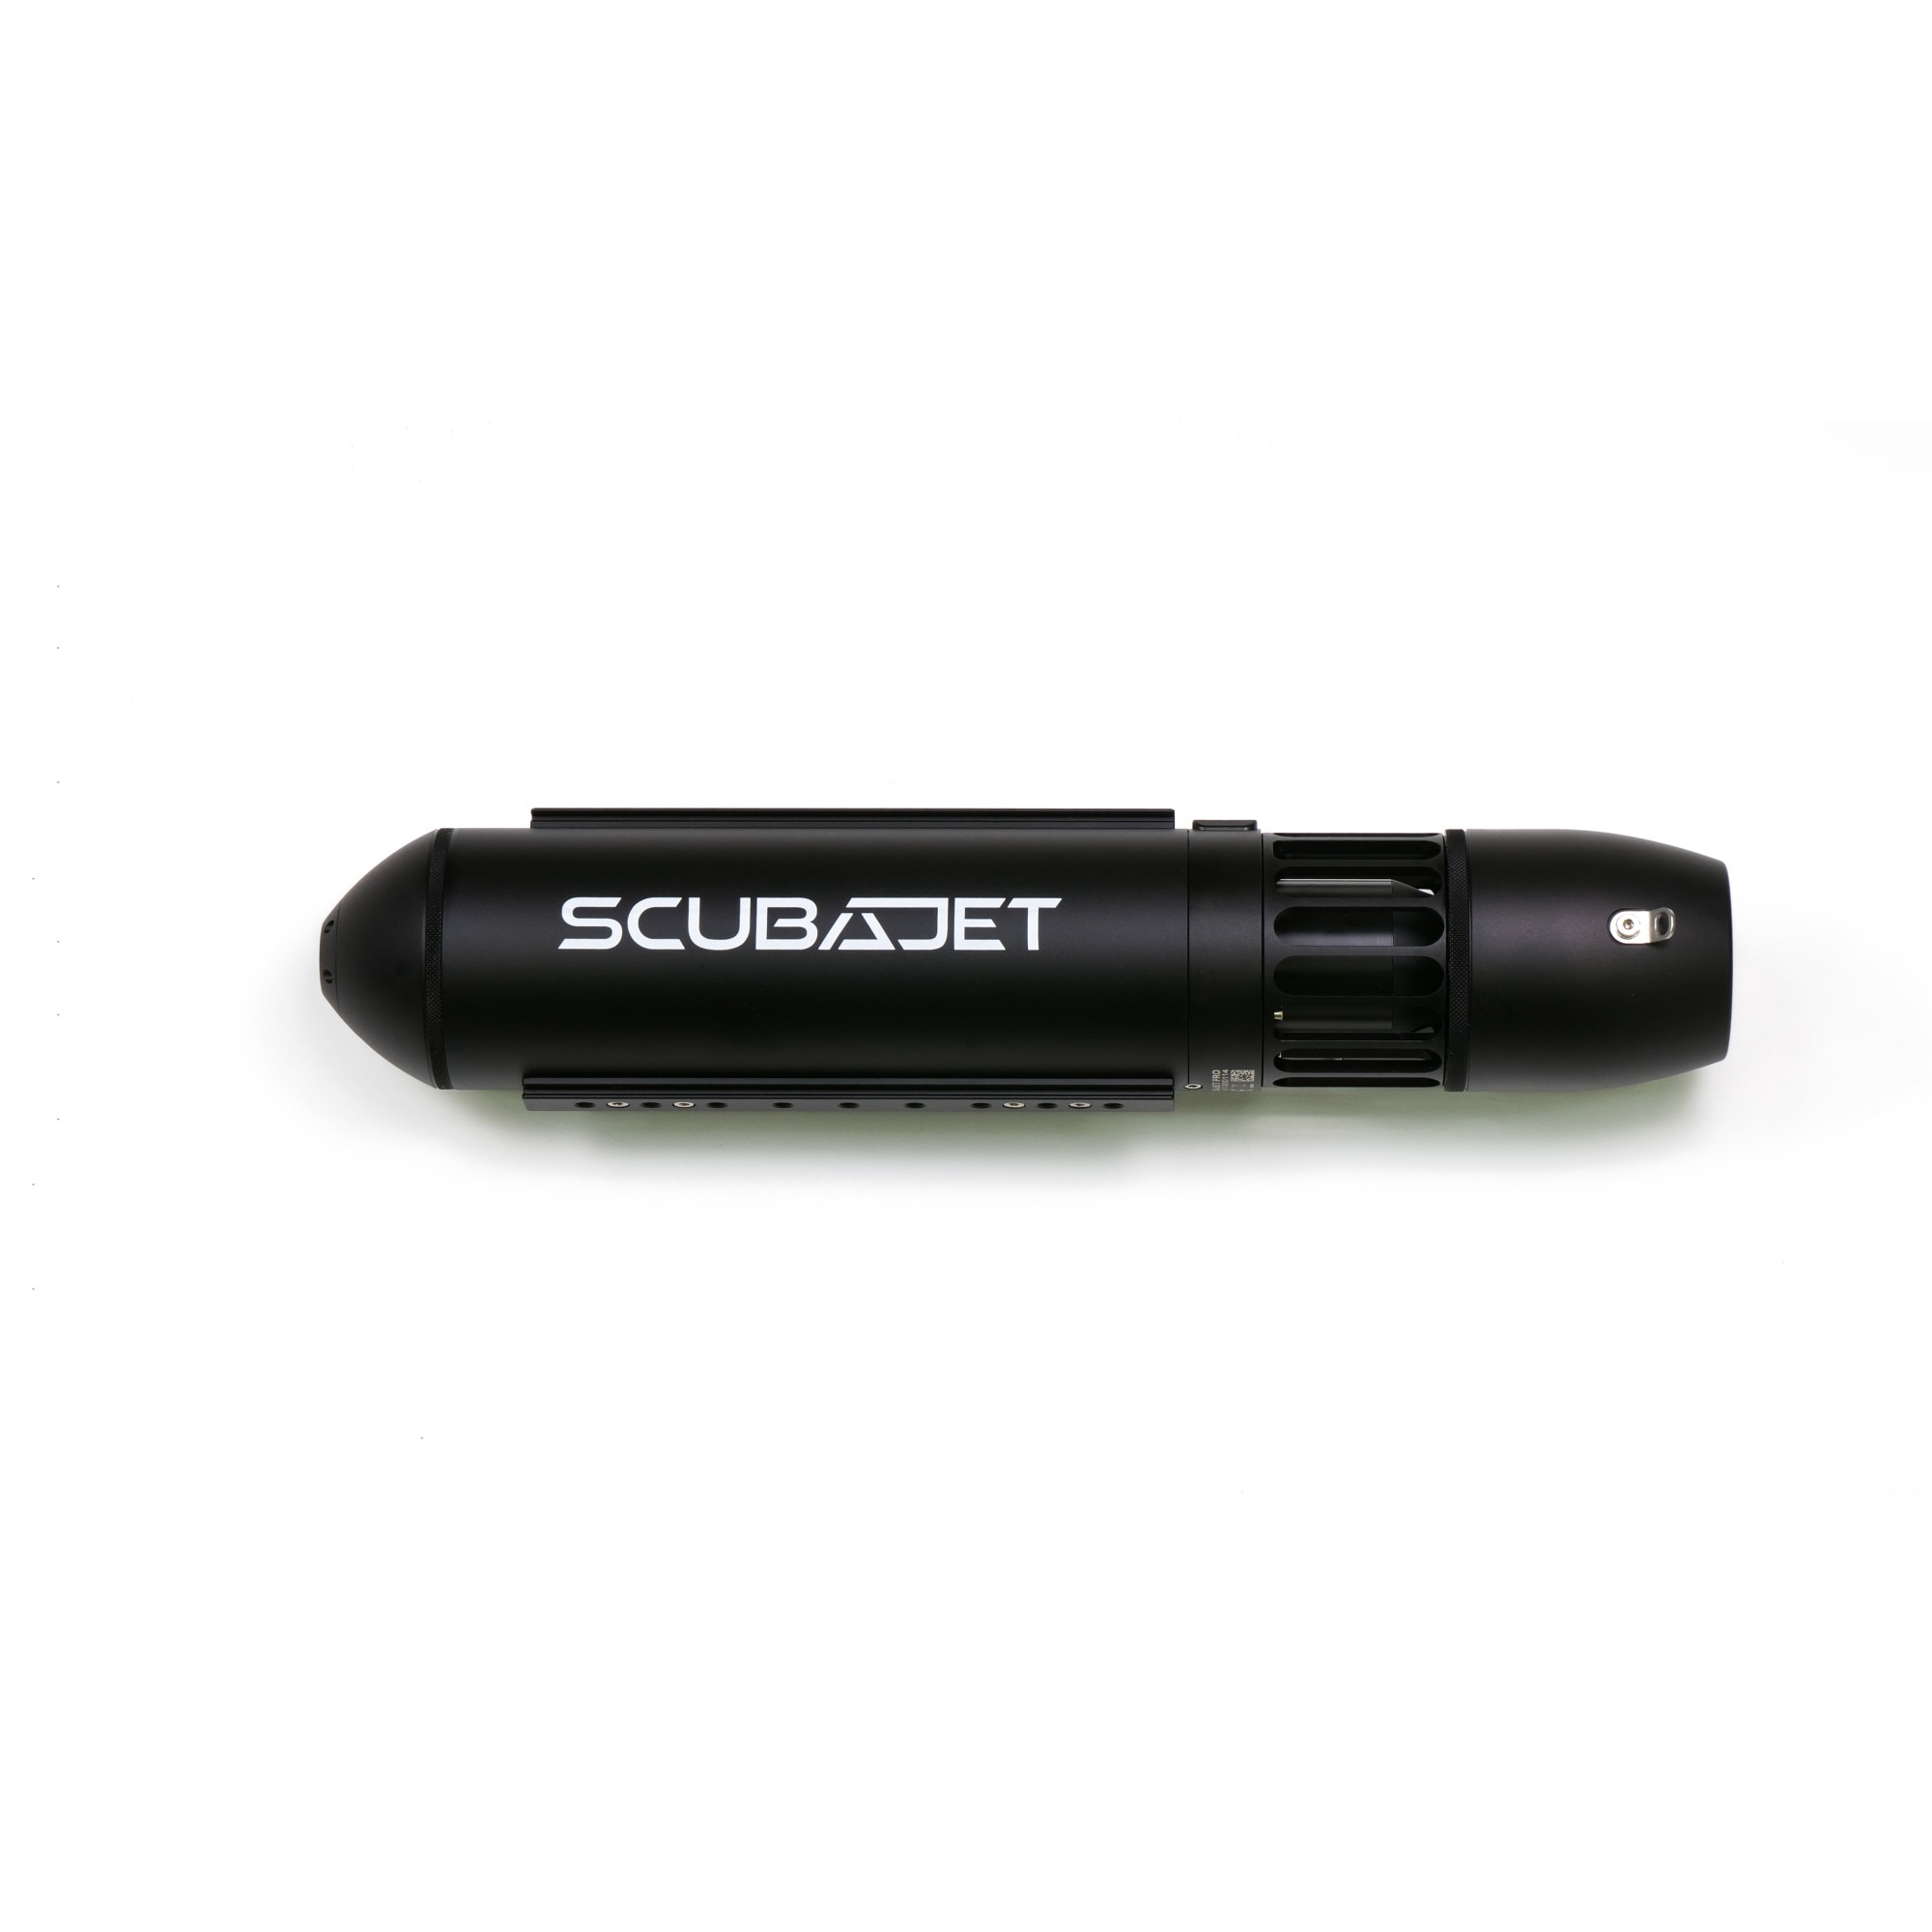 ScubaJet Pro All - in - One Kit 40072